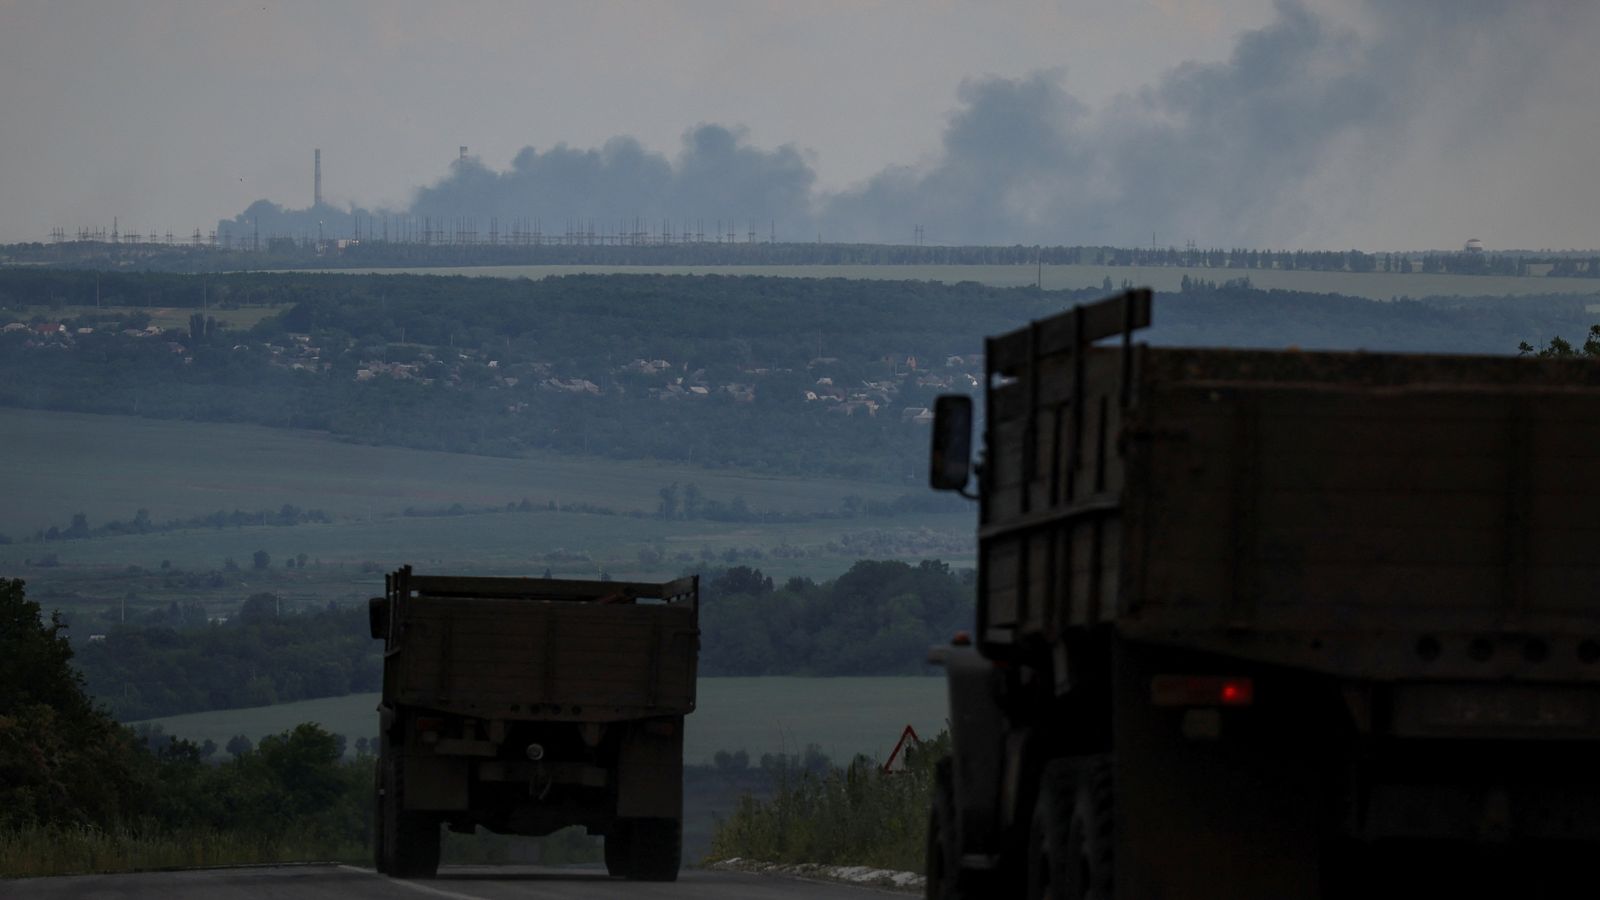 Guerra in Ucraina: le forze russe si impadroniscono di una centrale elettrica chiave: spingono più truppe a sud nella nuova campagna |  notizie dal mondo